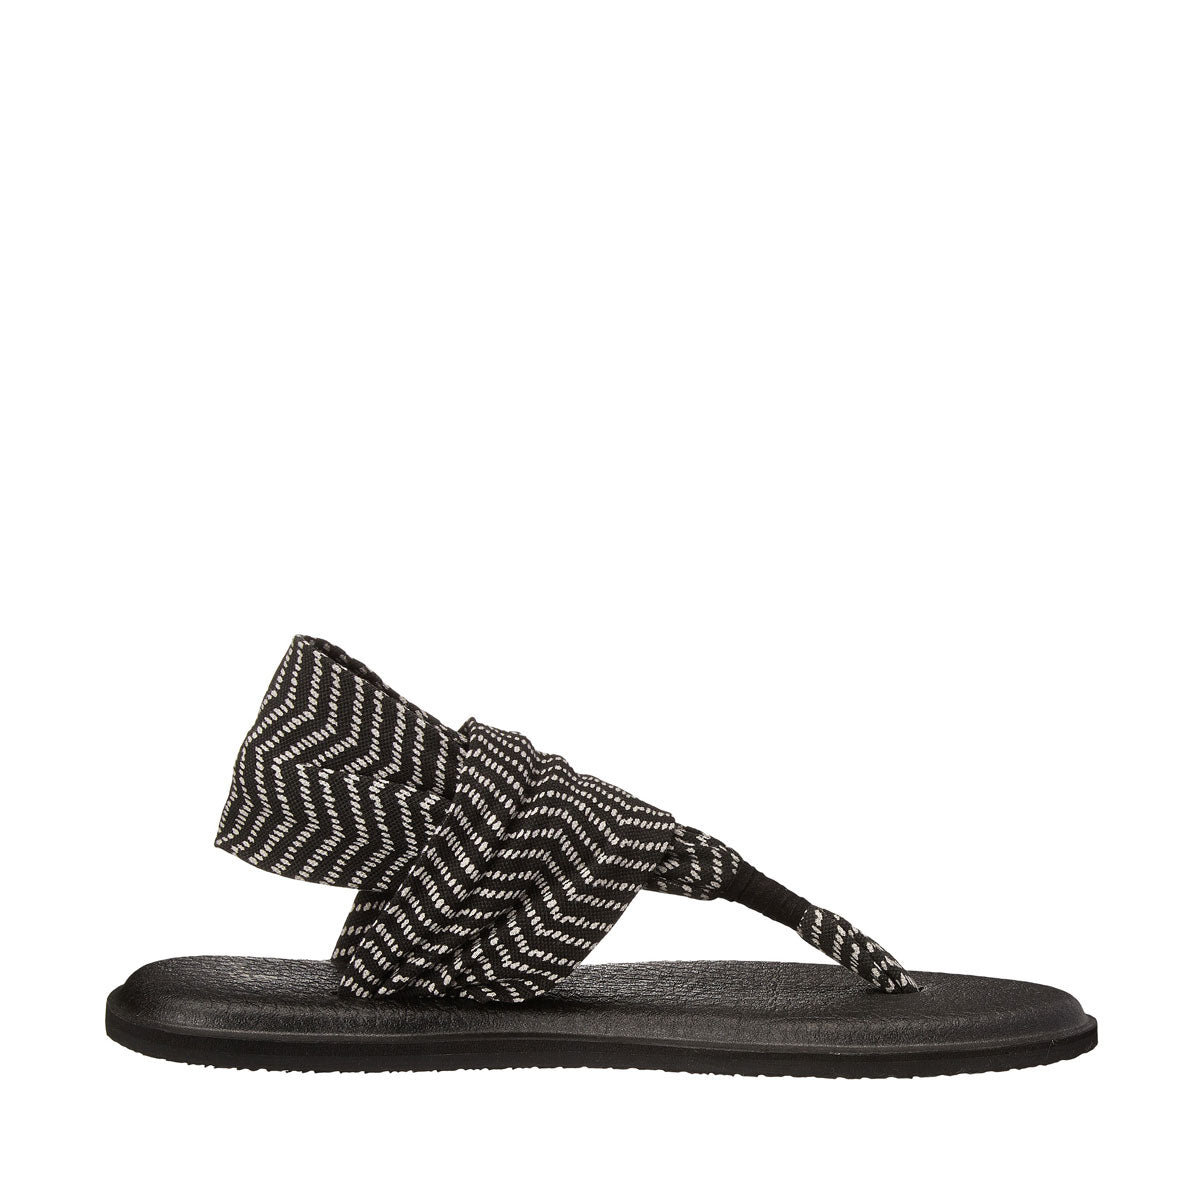 Sanuk Yoga Sling 2 Sandal  Fashion shoes, Sanuk yoga sling, Sandals